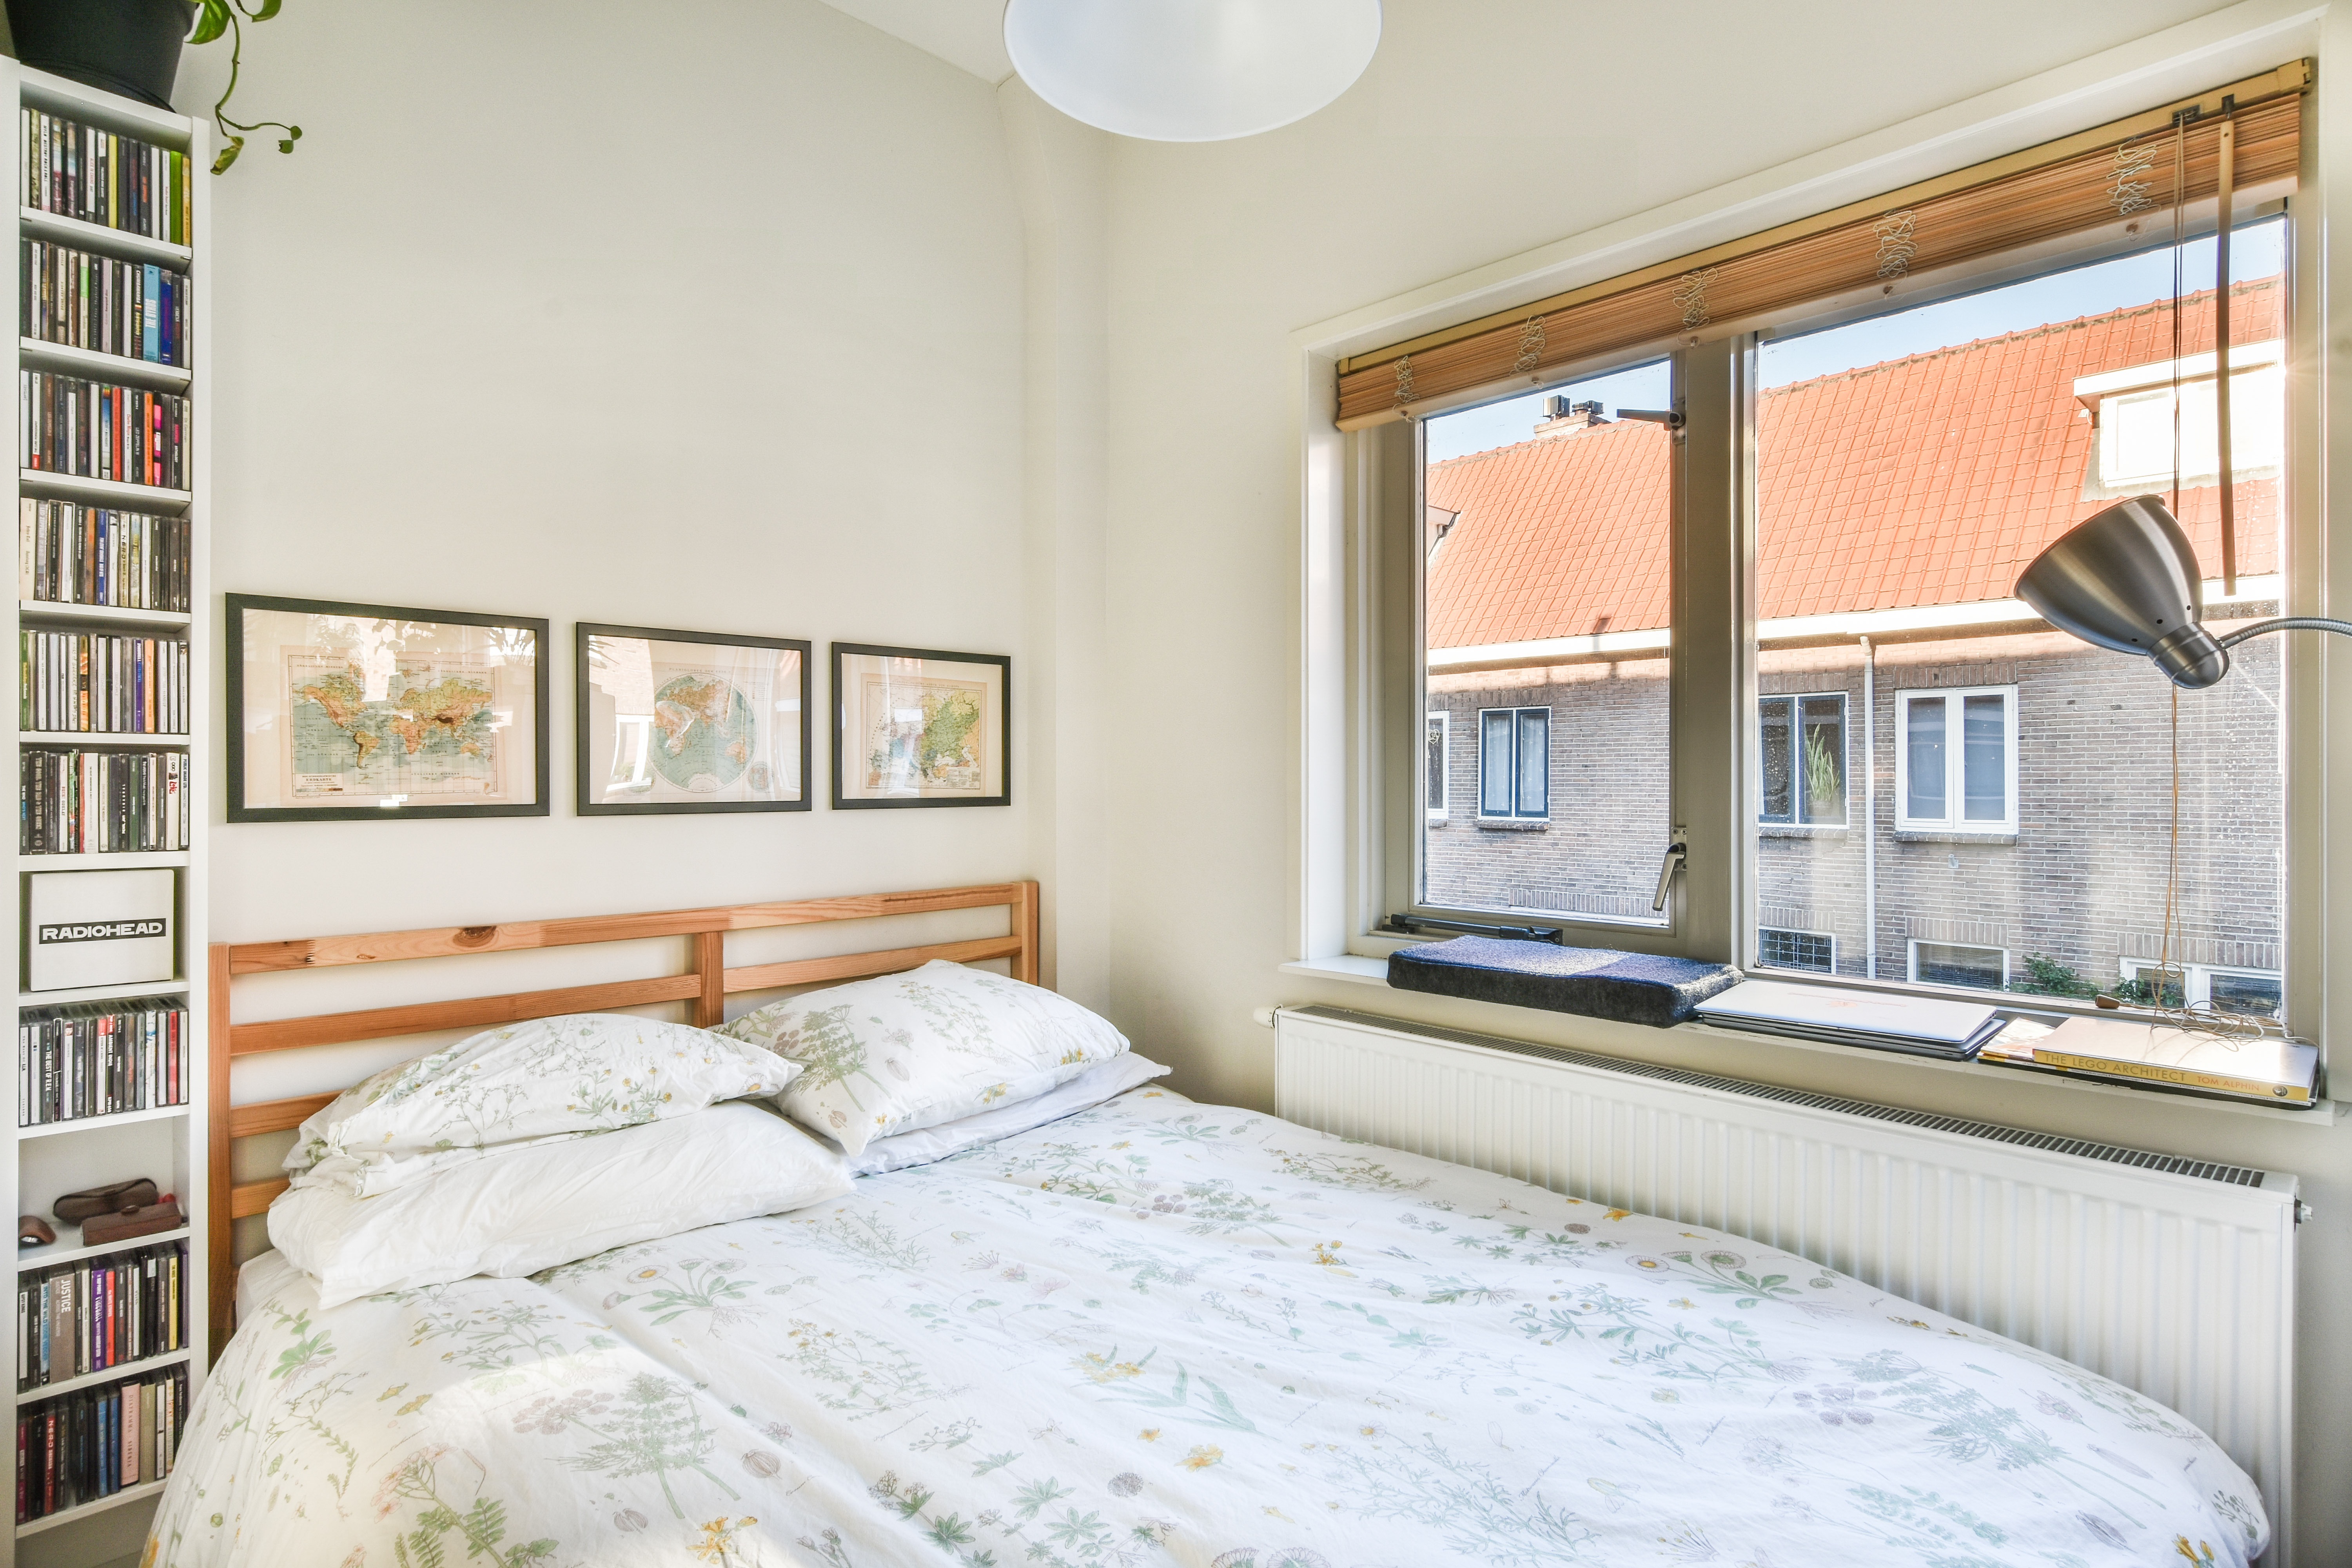 Woning / appartement - Utrecht - Jacob van der Borchstraat 74 A